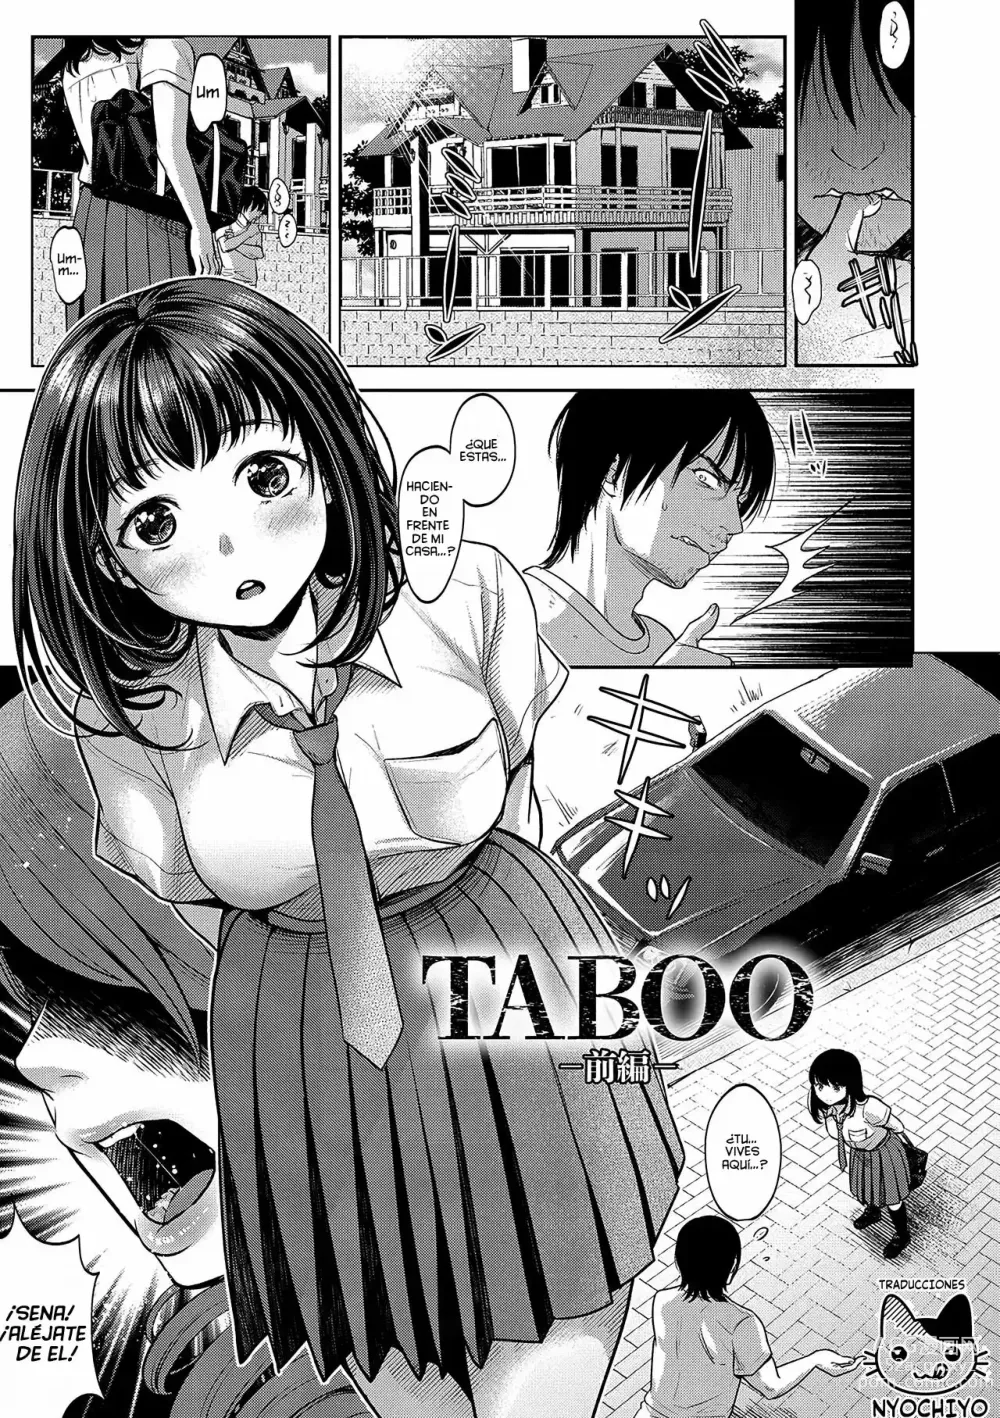 Page 2 of manga TABOO (Yarisugi Shoujo no Kowashikata.) Ch. 1-3 + What If...?